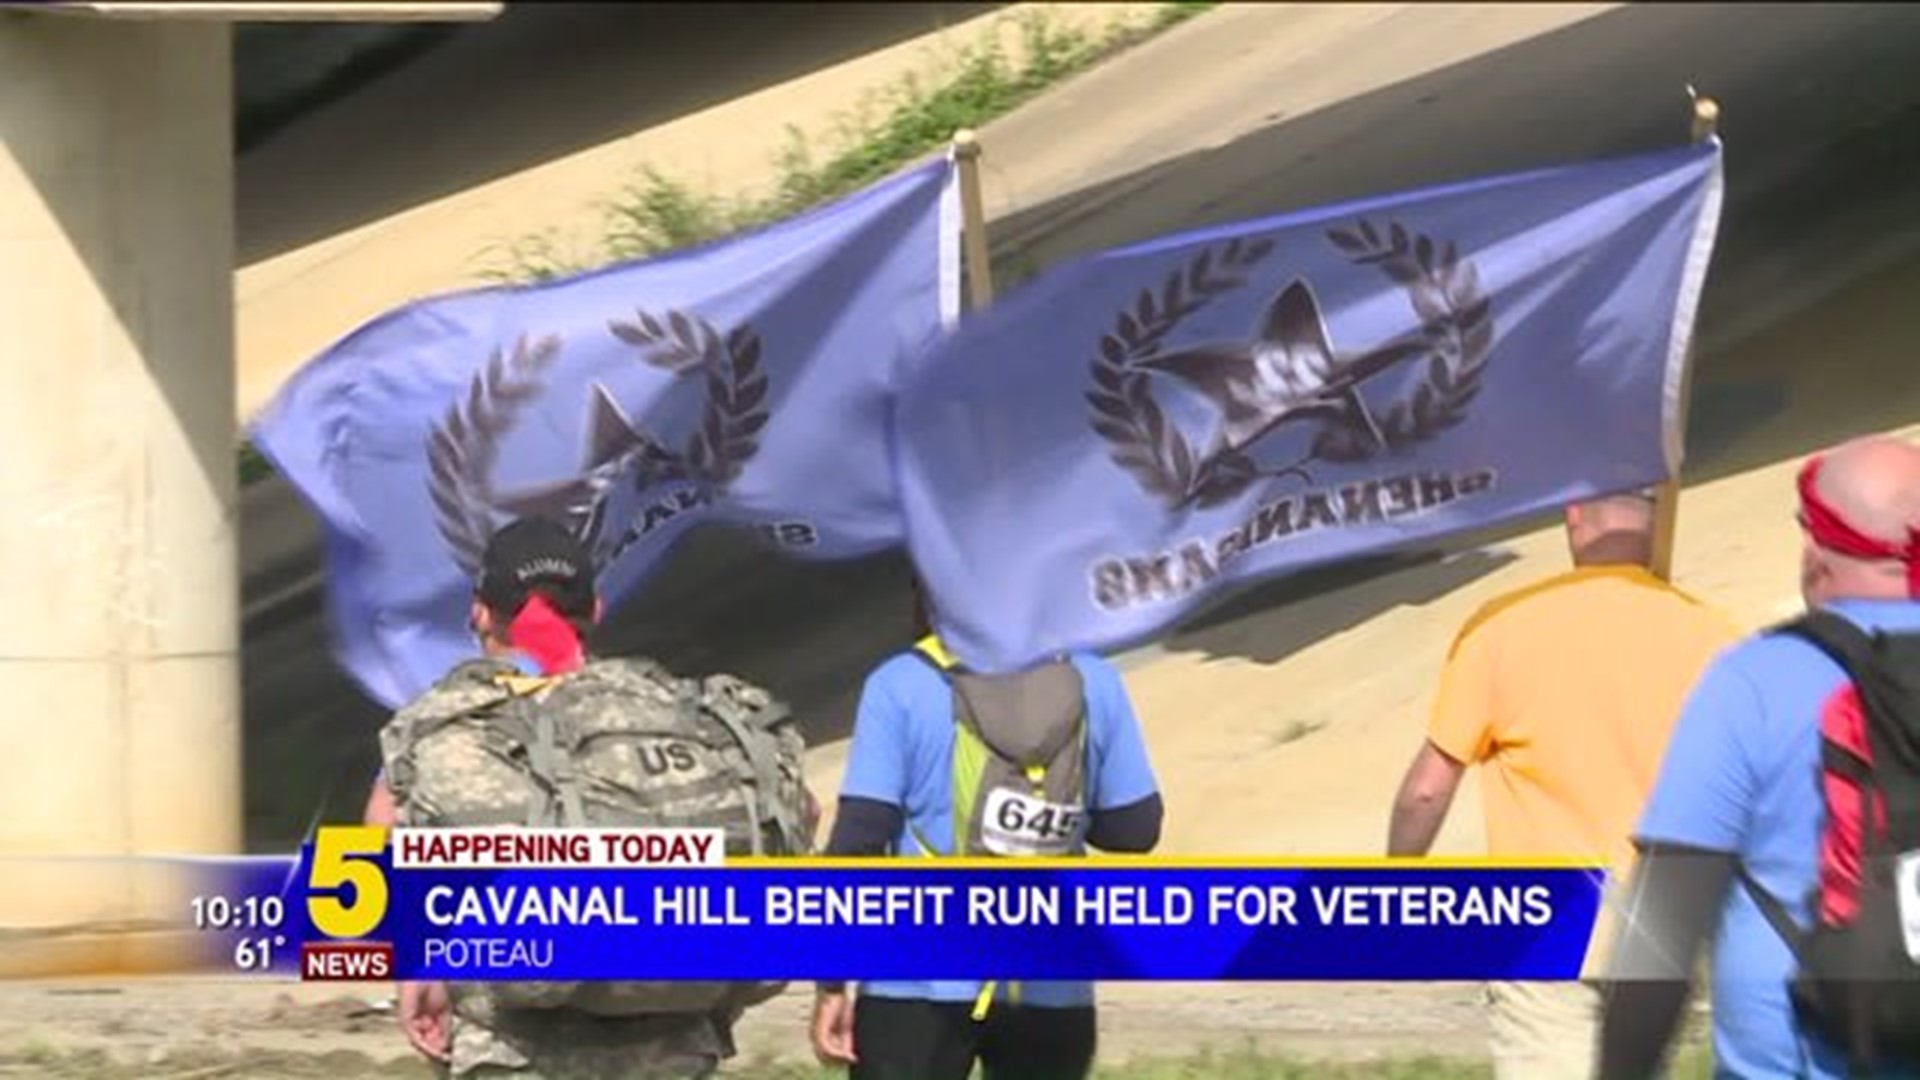 Cavanal Hill Run To Benefit Veterans